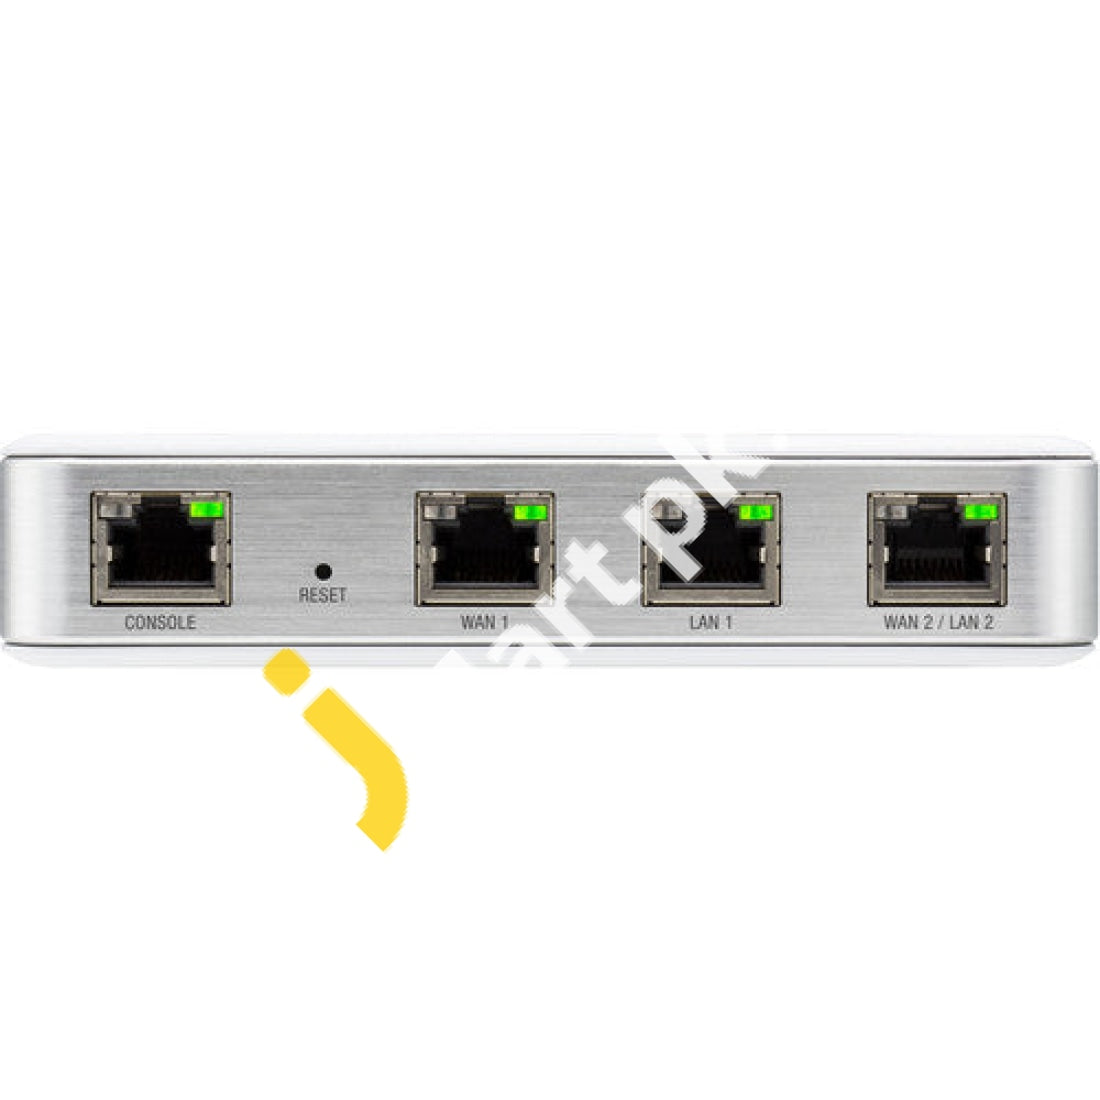 Ubiquiti Networks Unifi Enterprise Security Gateway With Gigabit Ethernet (Usg) - Imported From Uk